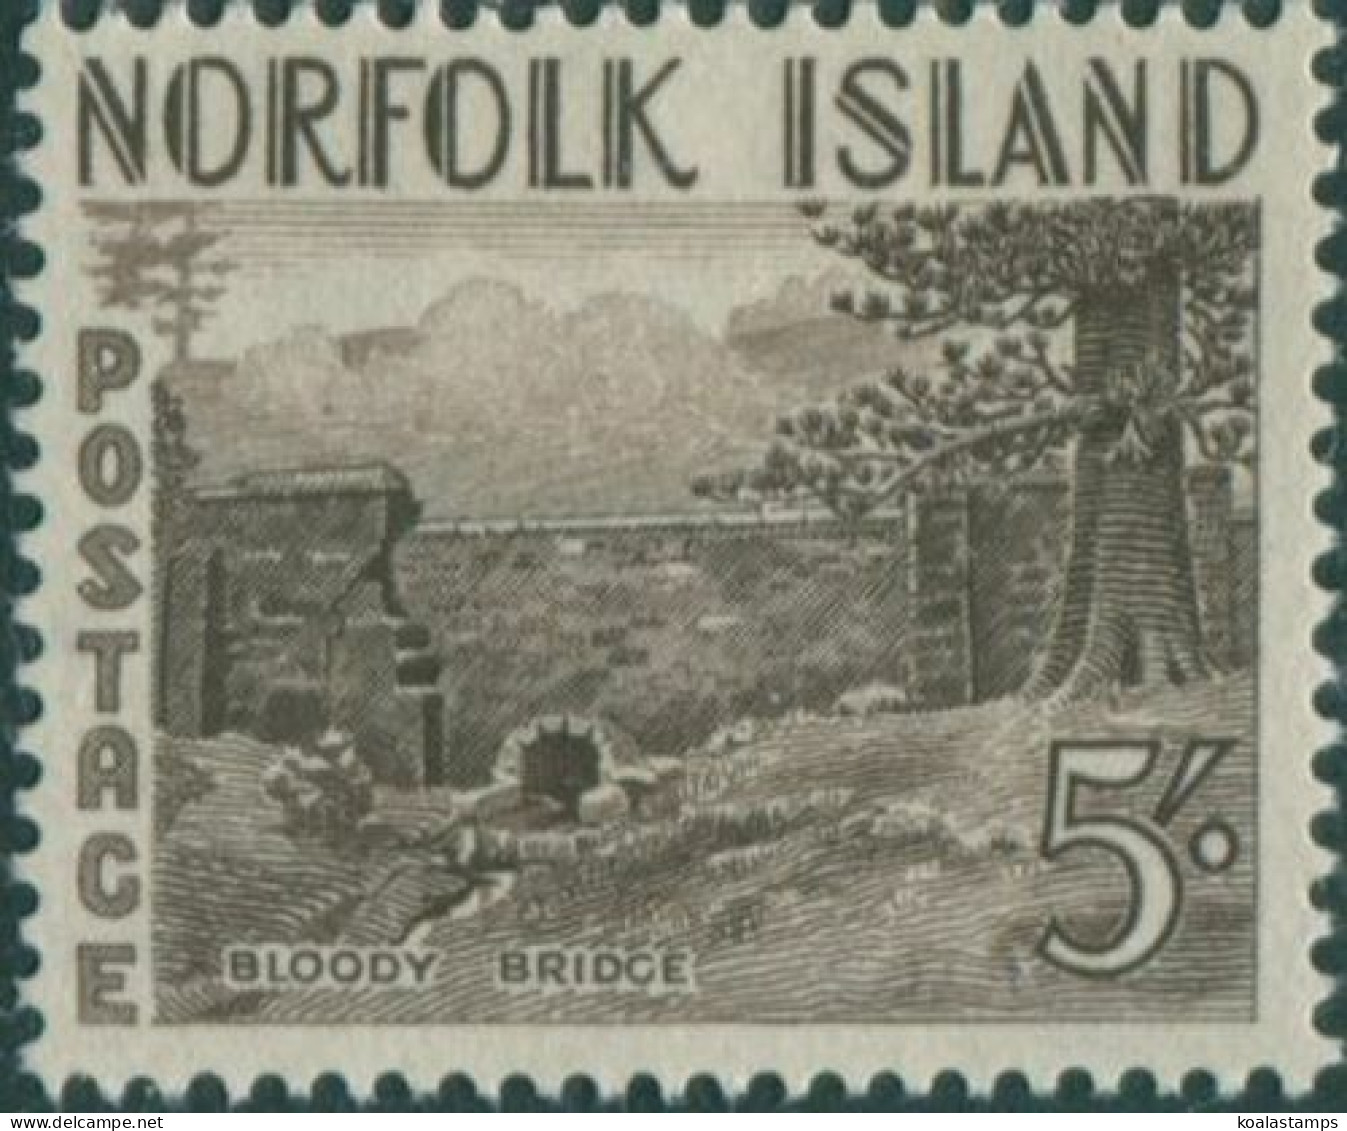 Norfolk Island 1953 SG18 5/- Brown Bloody Bridge MNH - Isola Norfolk